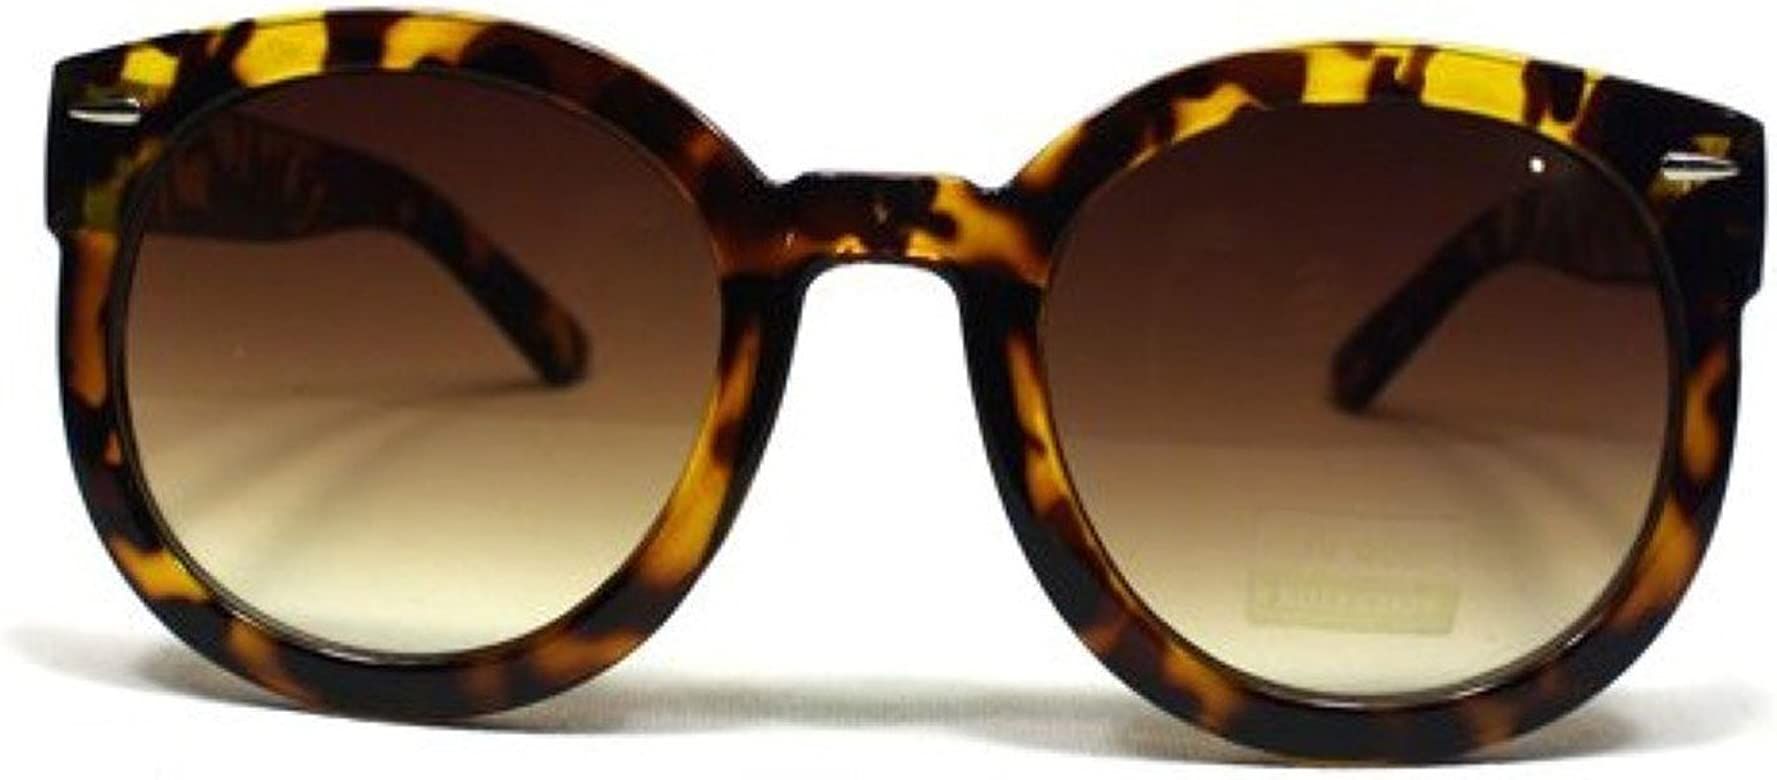 Women's Designer Inspired Oversized Round Circle Sunglasses Mod Fashion | Amazon (US)